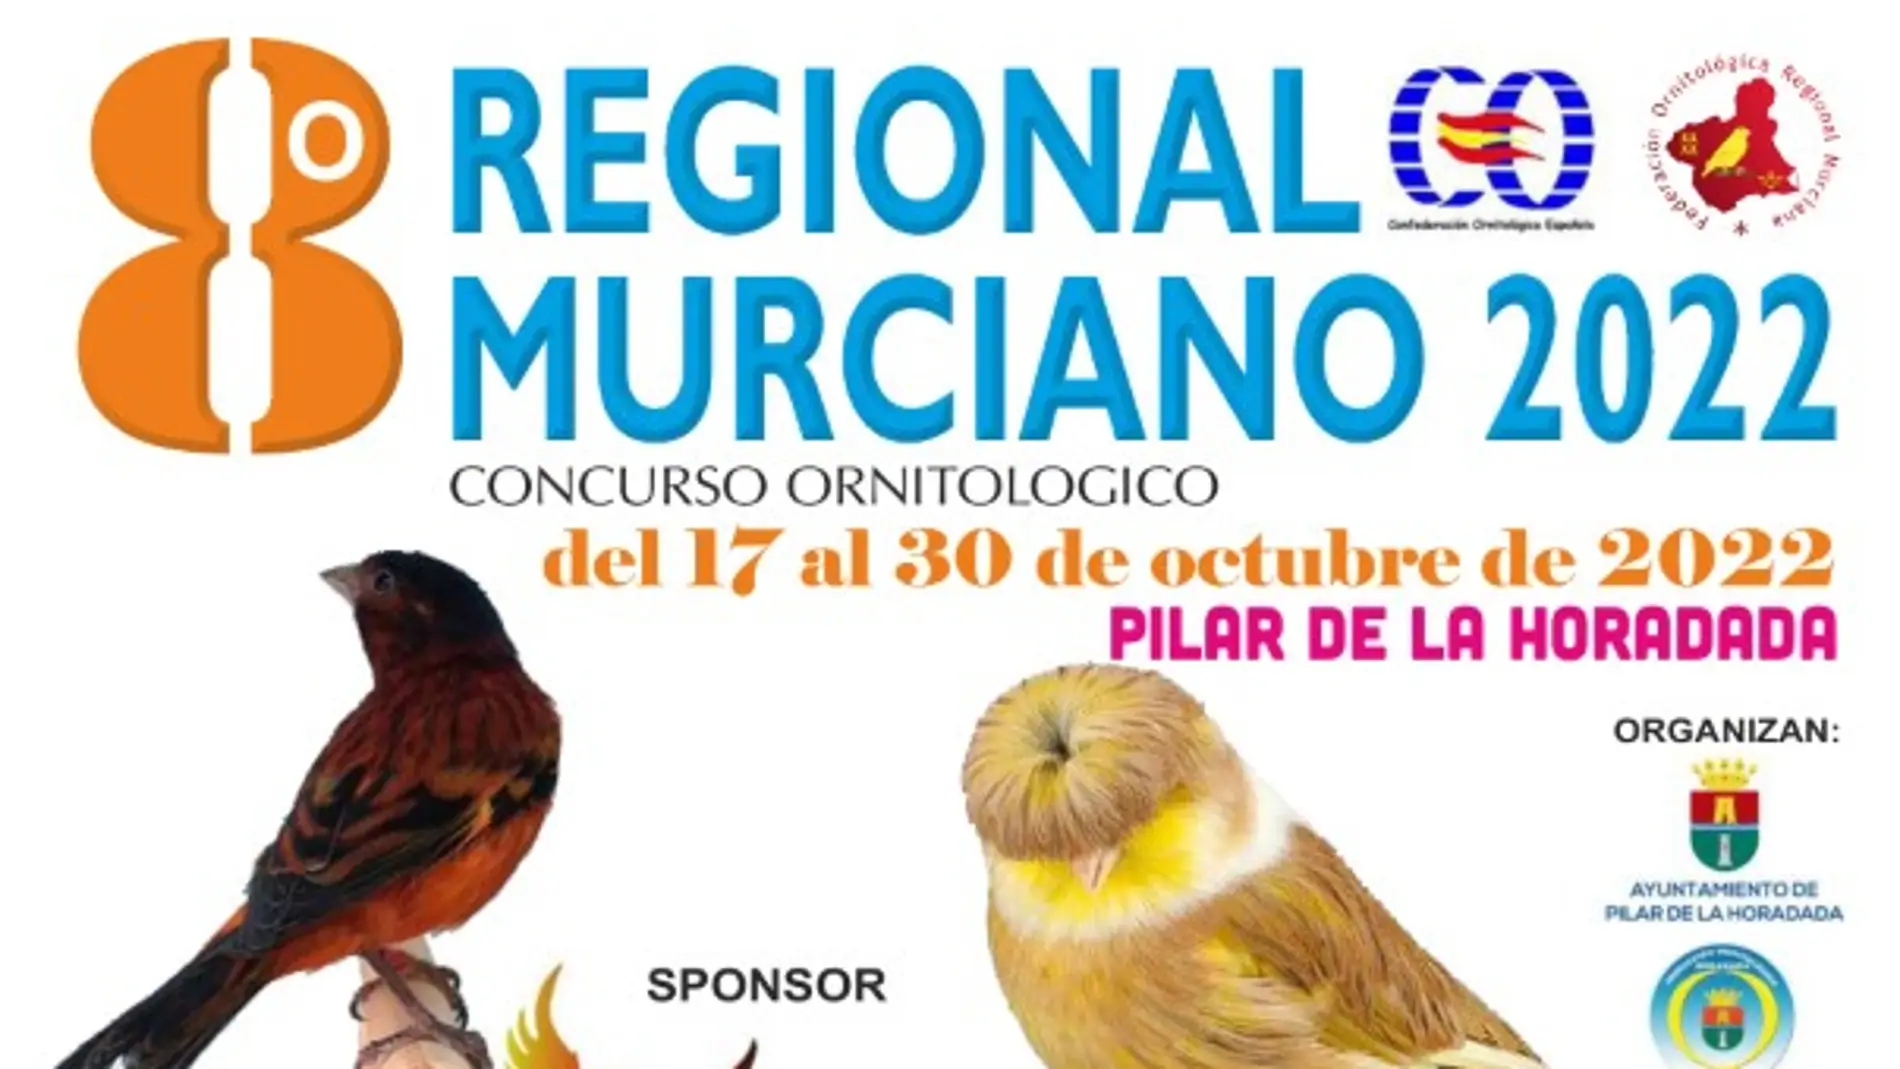 El campeonato regional murciano de ornitología se celebrará este año en Pilar de la Horadada 